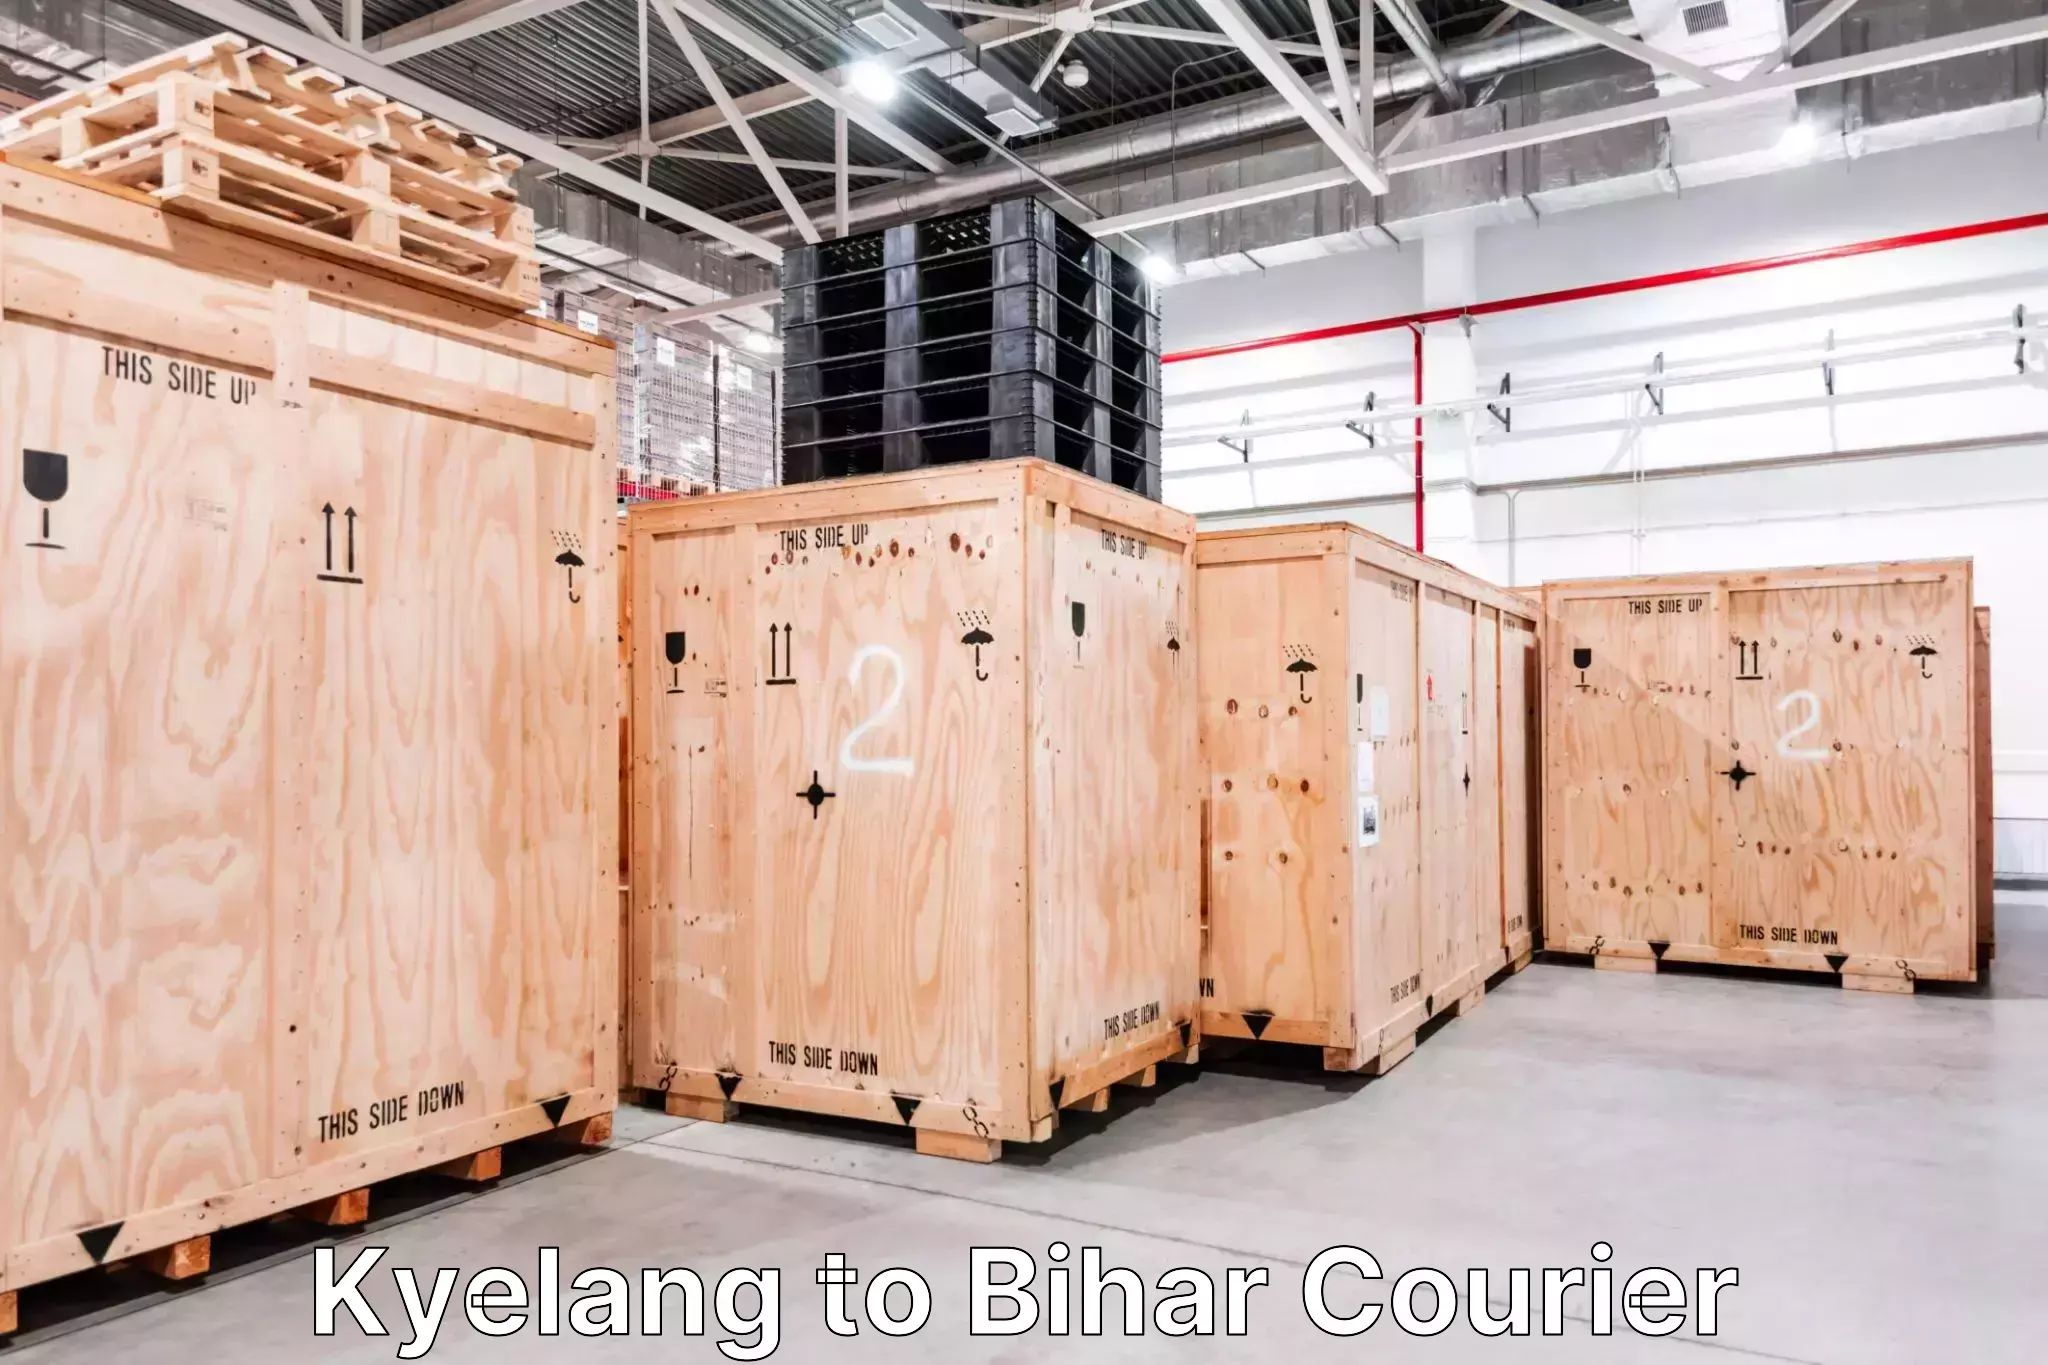 Baggage transport scheduler Kyelang to Bihar